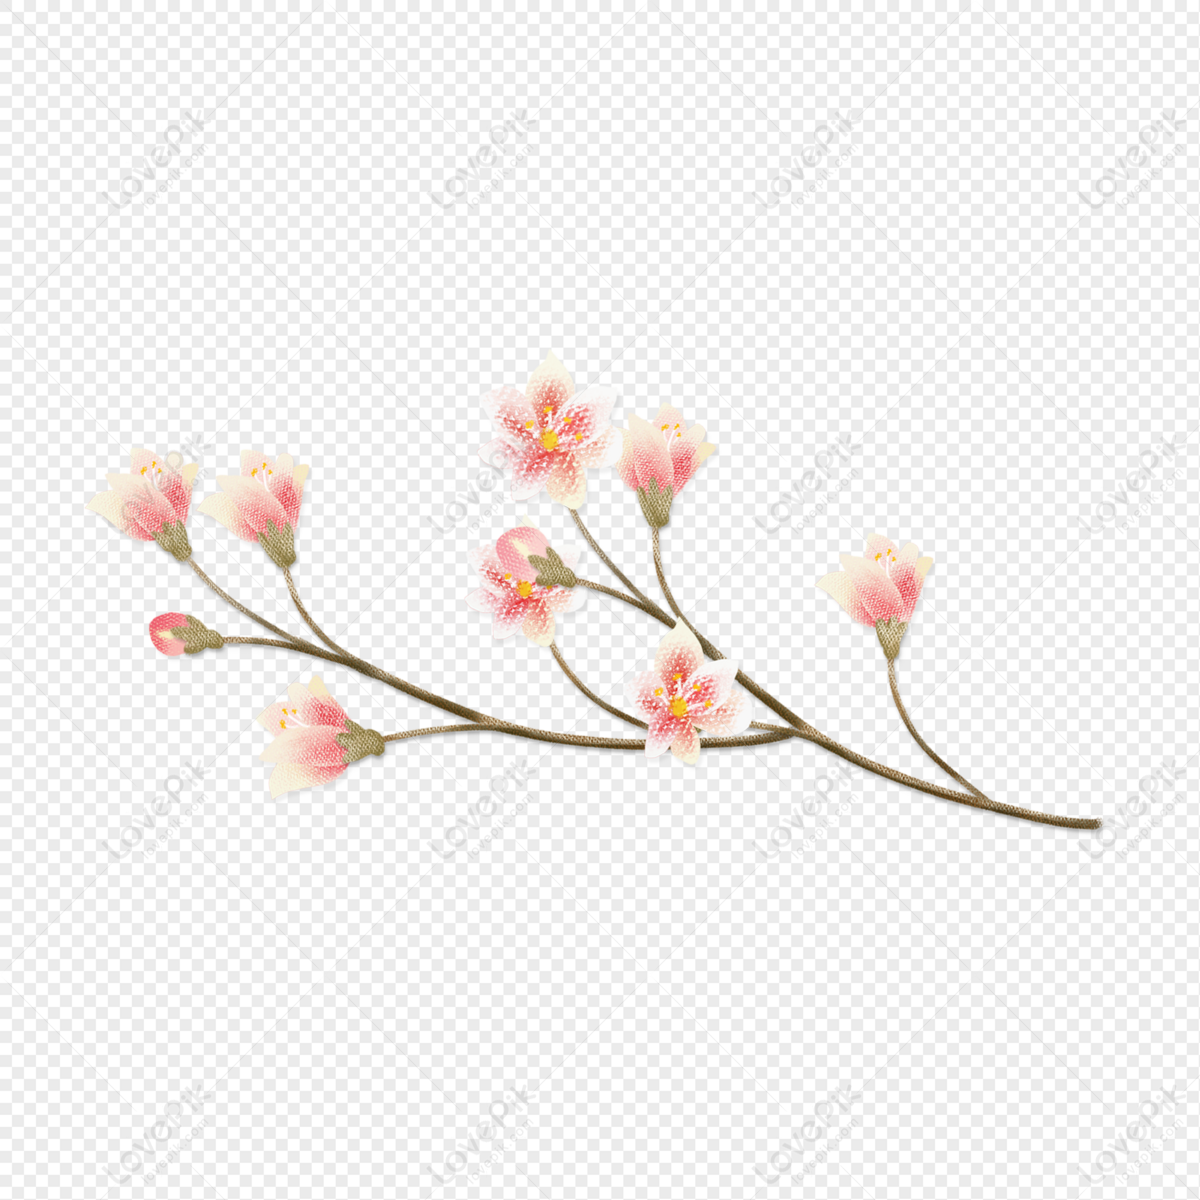 Hoa magnolia vẽ tranh: Hoa magnolia là một trong những loài hoa đẹp nhất trên thế giới. Với những cánh hoa trắng tinh khôi, hoa magnolia là nguồn cảm hứng lý tưởng cho các nghệ sĩ vẽ tranh sáng tạo.